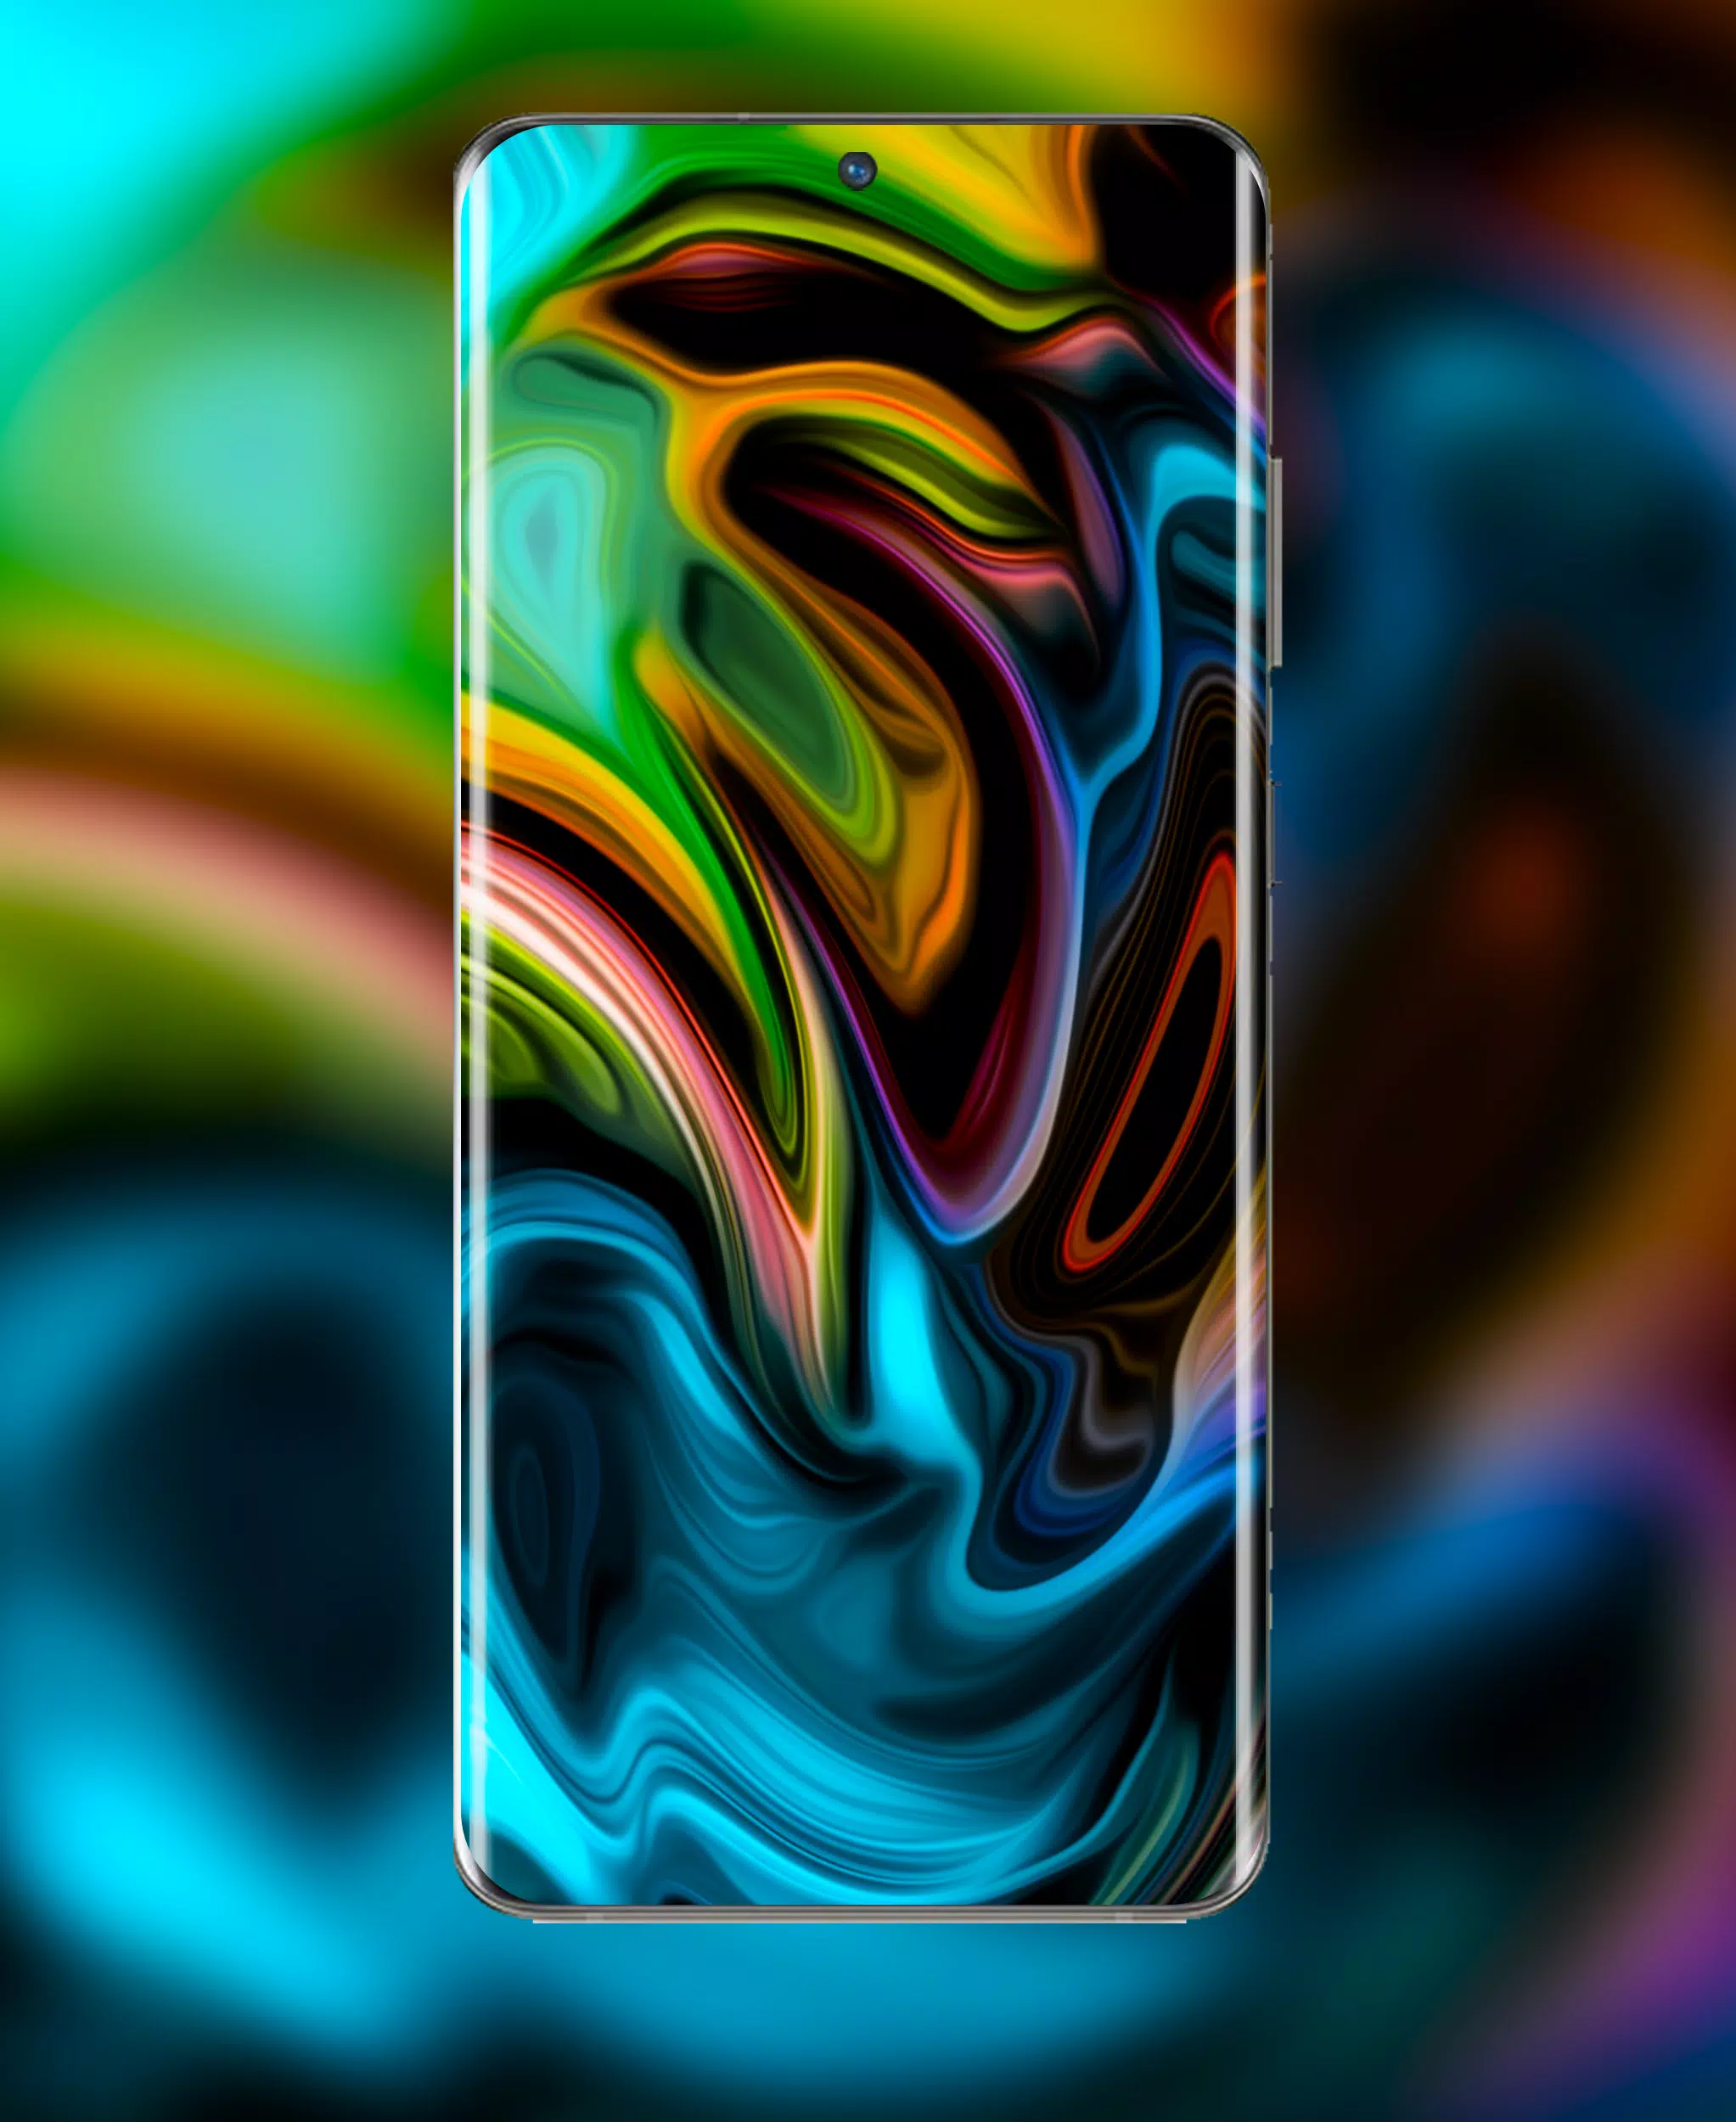 Tải xuống ứng dụng hình nền Galaxy S22 Ultra Wallpaper APK ngay để trang trí cho chiếc điện thoại của bạn thật hoàn hảo. Hàng ngàn bức ảnh đẹp đang chờ bạn khám phá, hãy tải nhanh để trải nghiệm ngay hôm nay!